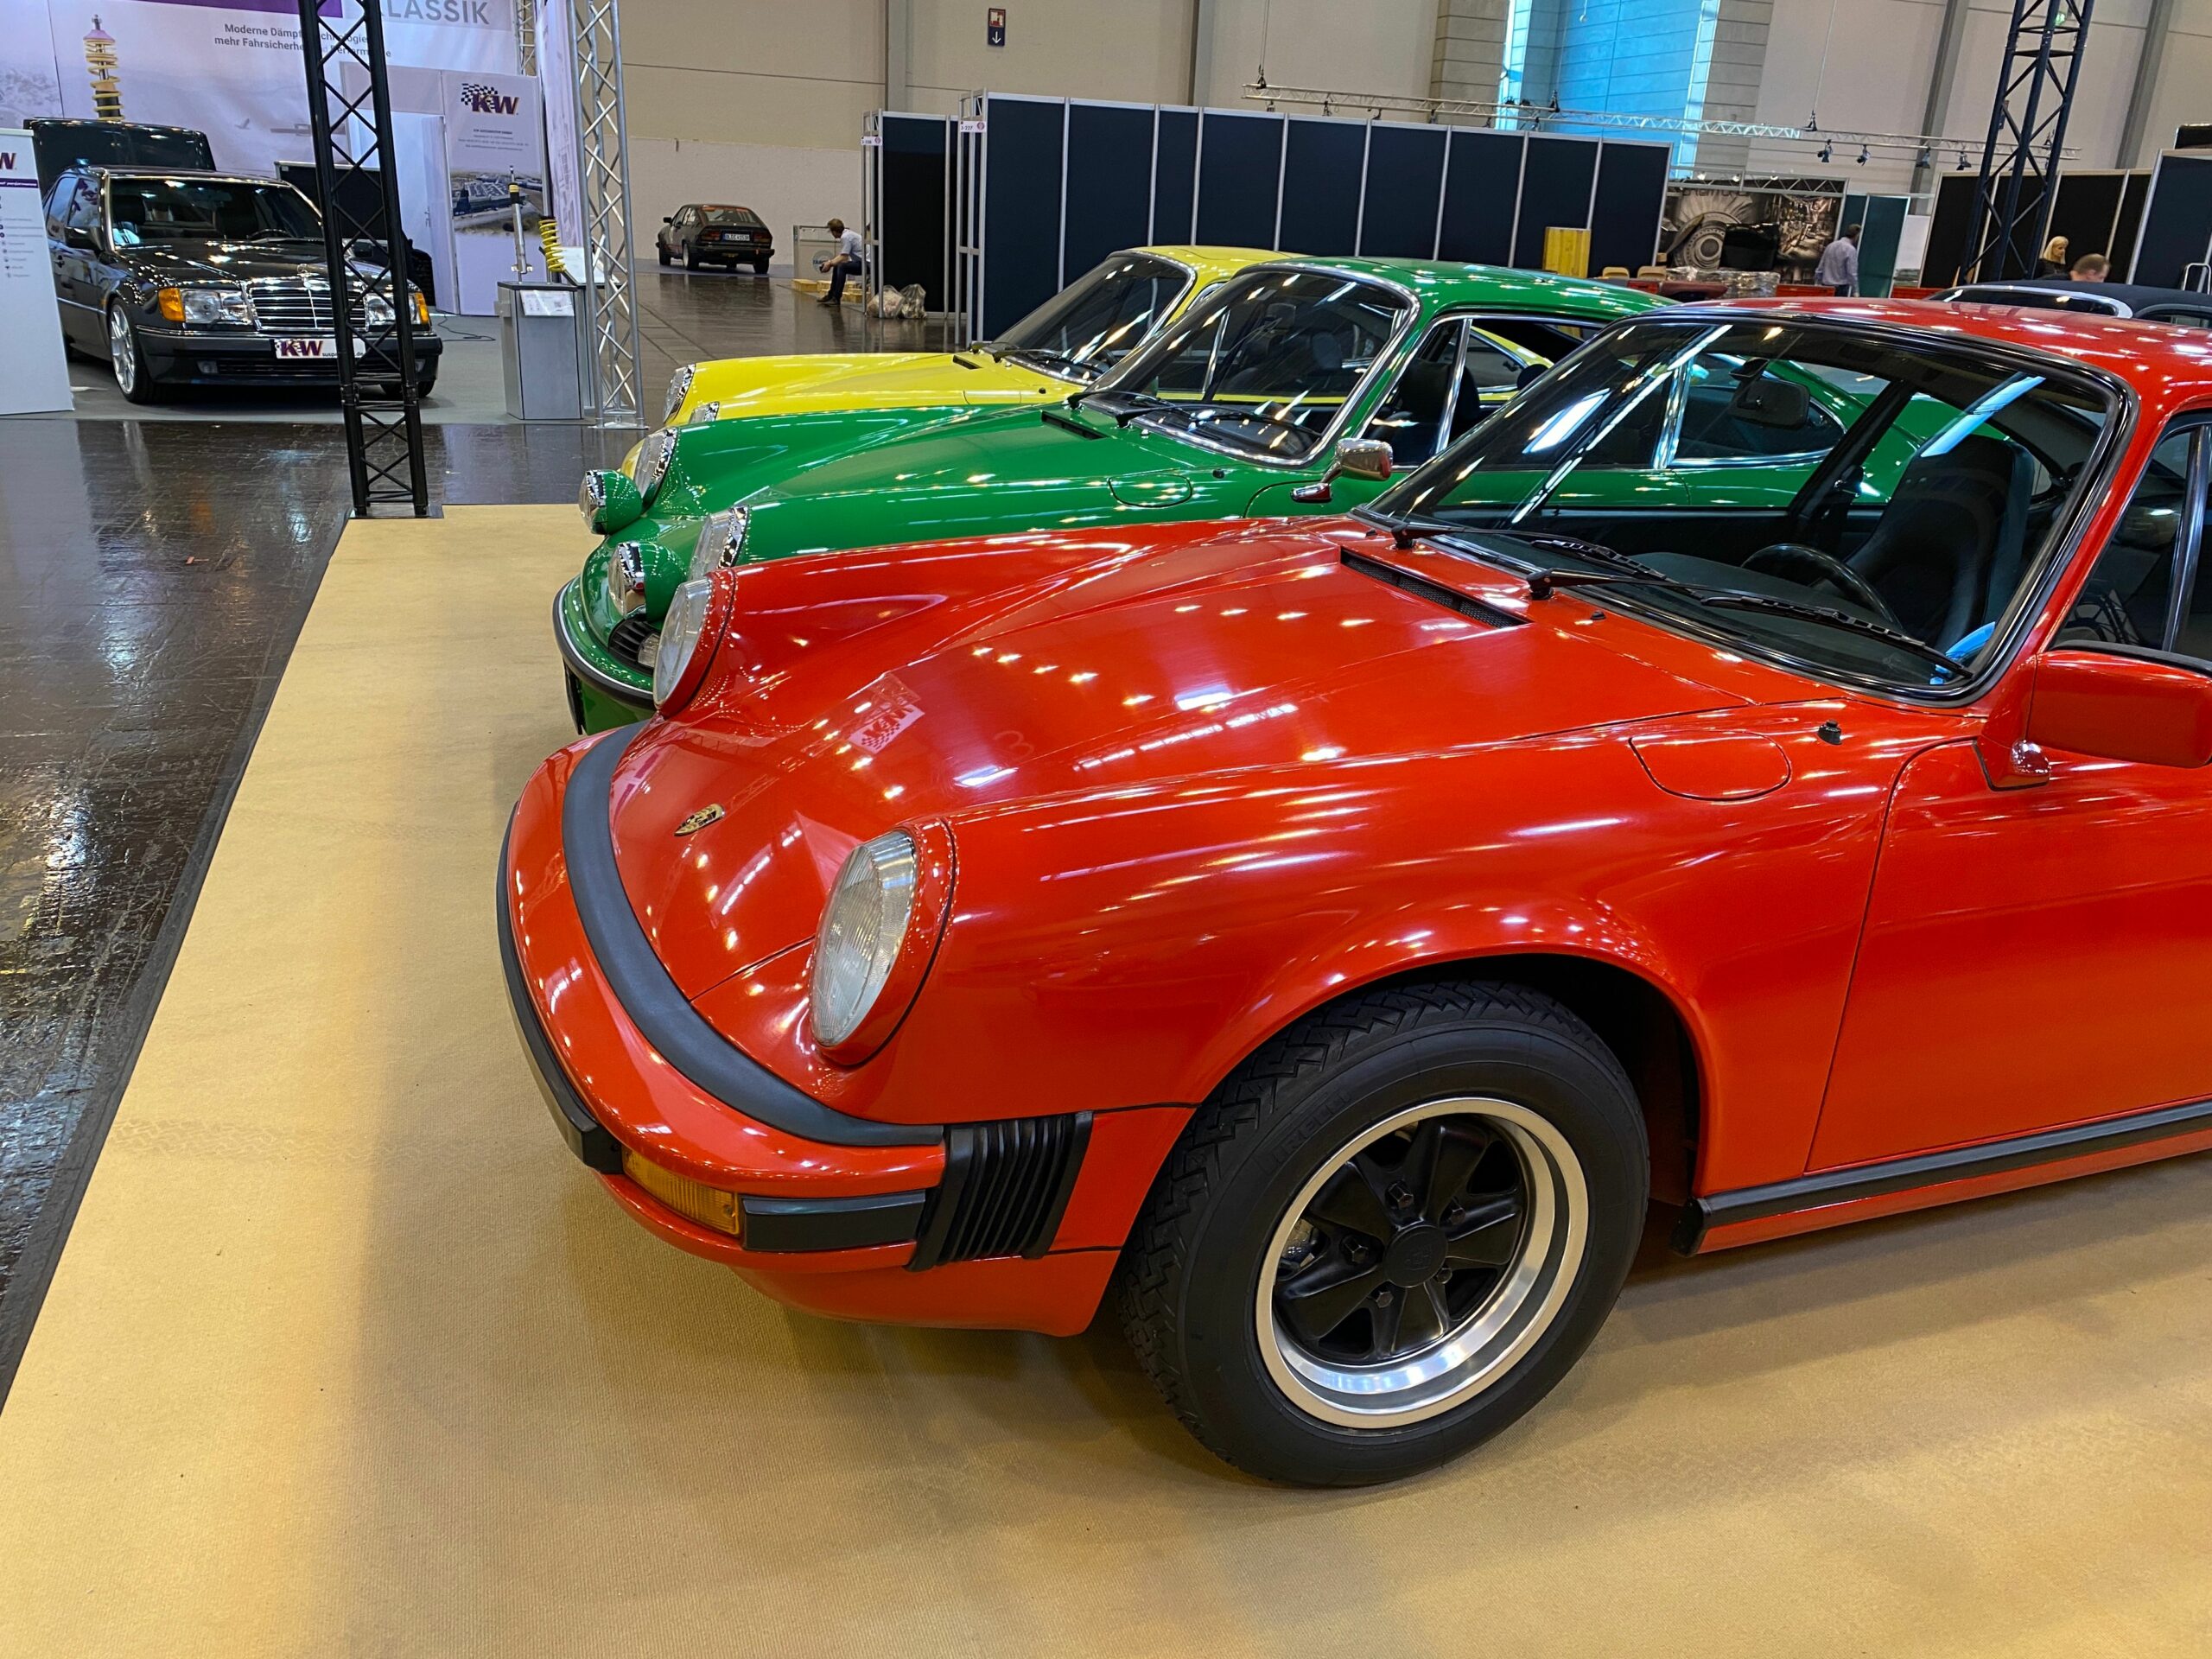 Porsche in drei Farben